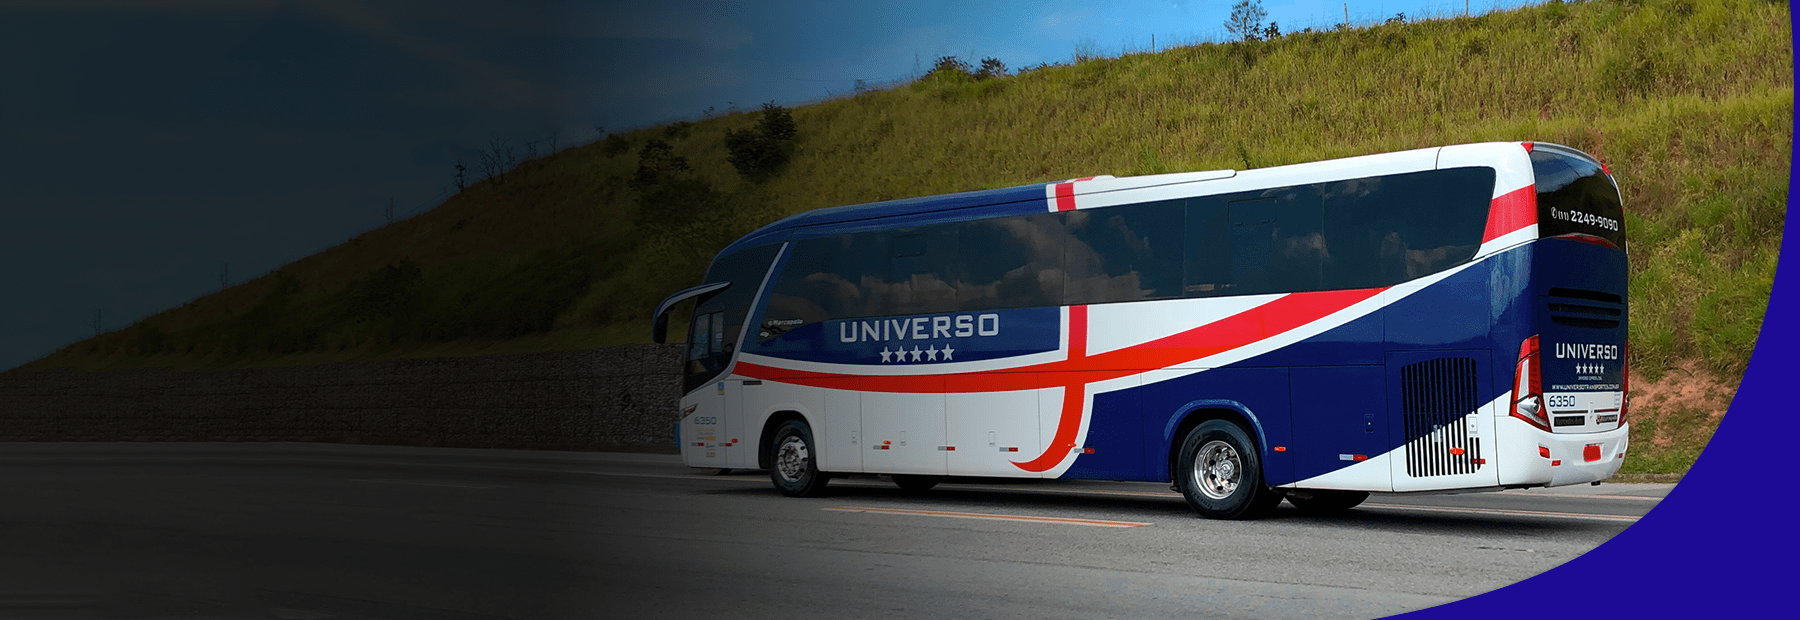 Universo Transportes Fretamento De ônibus Micro ônibus E Vans Fretamento Empresarial E Turismo 8677